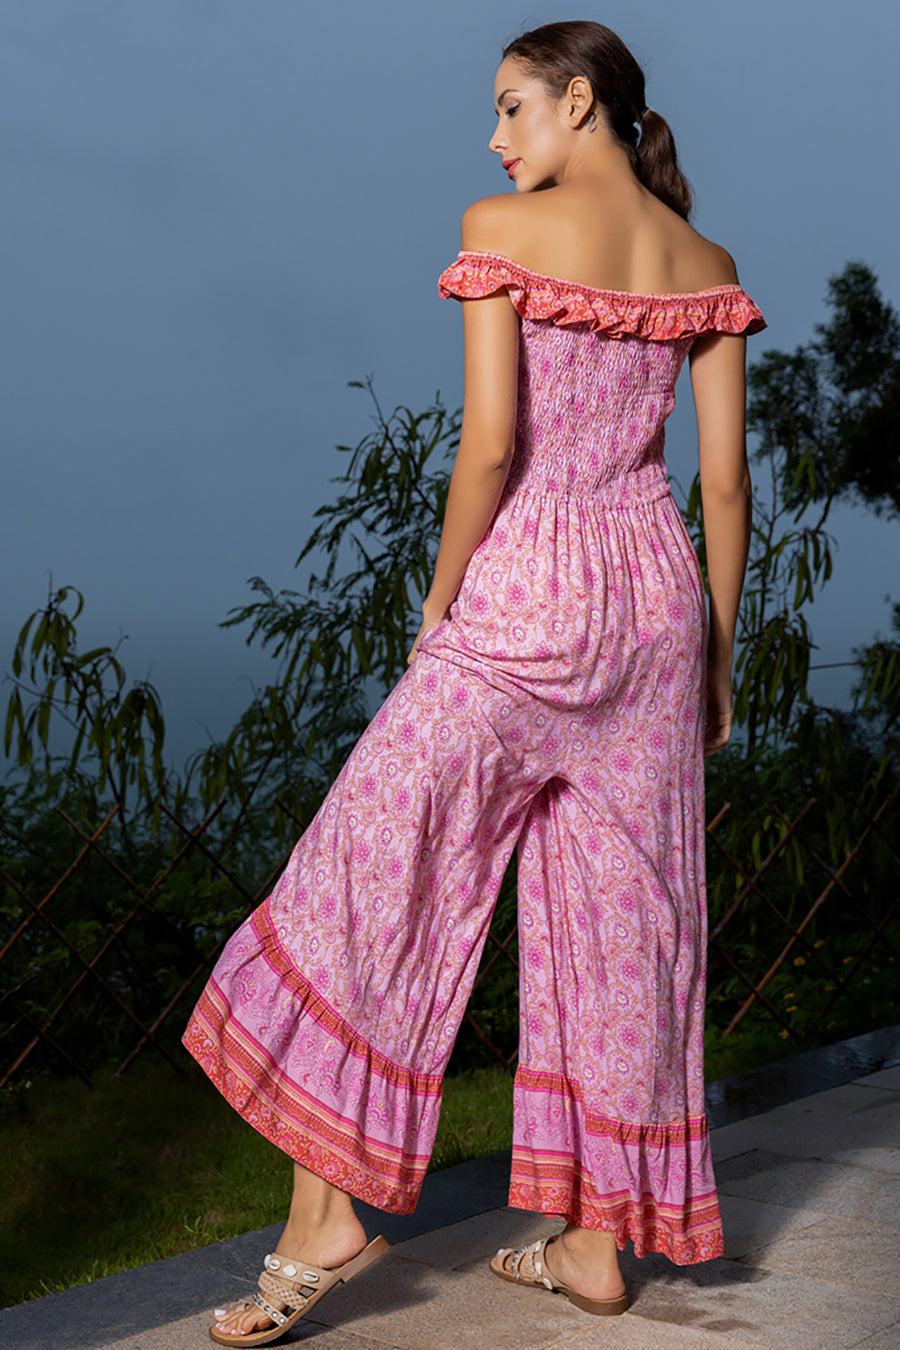 Γυναικεία ολόσωμη φόρμα Herta, Ροζ 2